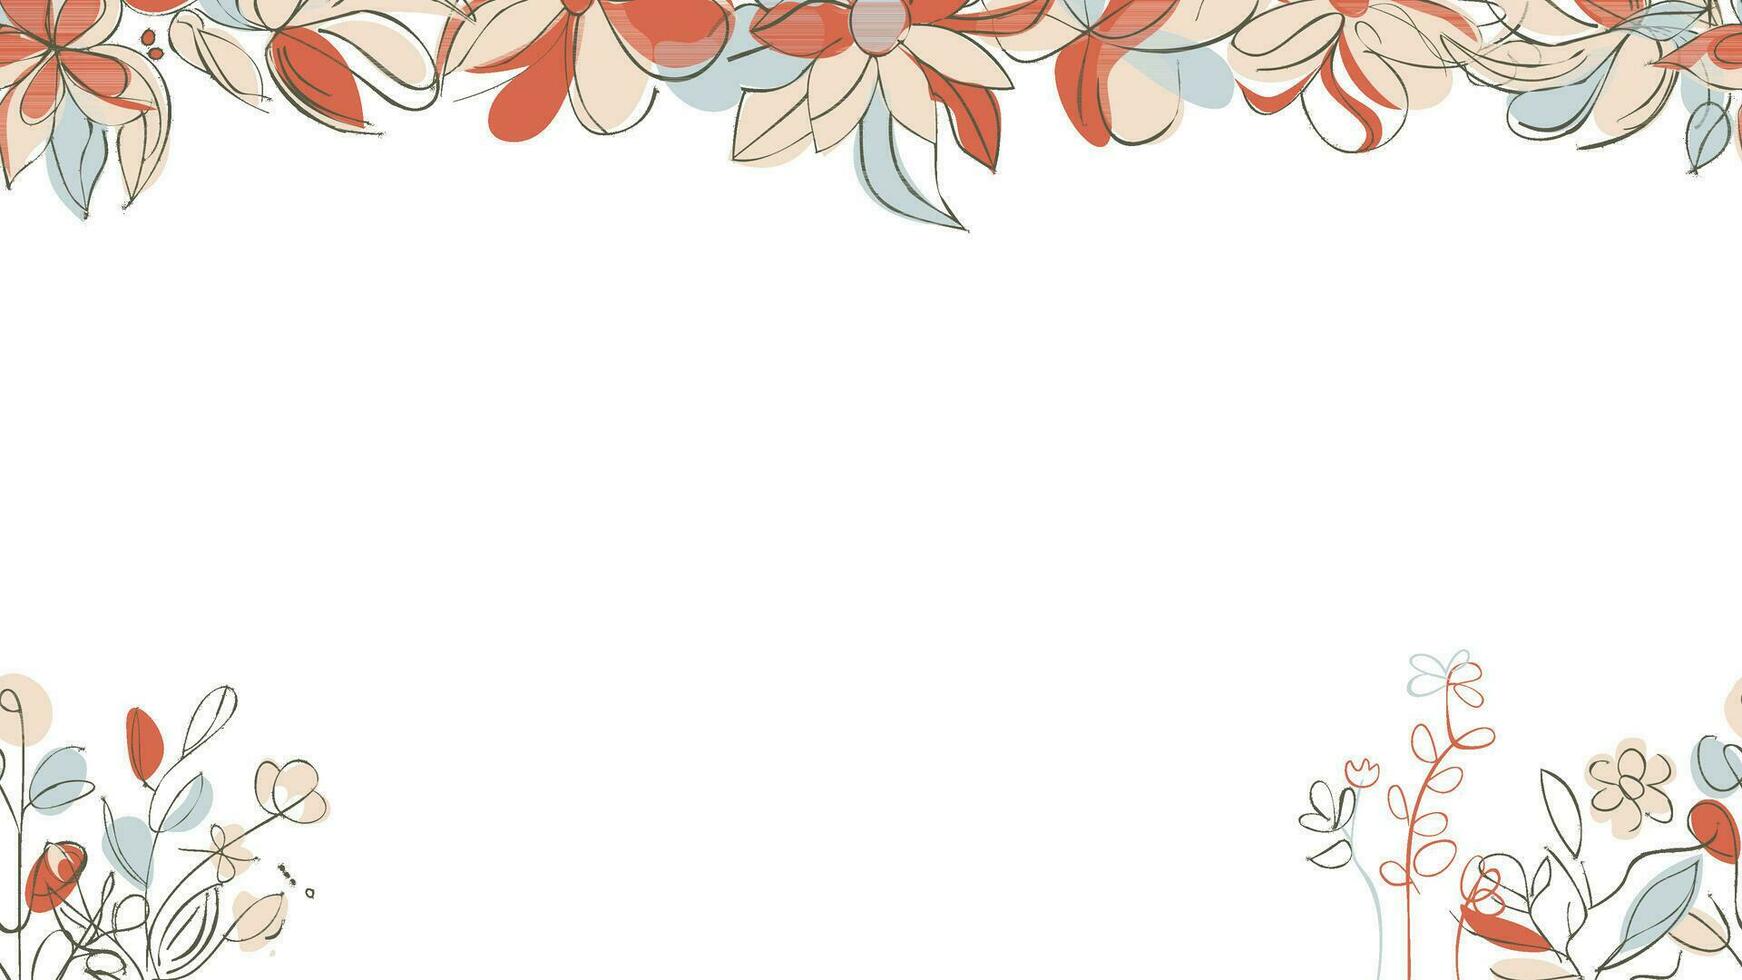 Frühling bunt botanisch eben Vektor horizontal Illustration auf Weiß Hintergrund. Banner Blumen- Hintergrund dekoriert mit Herrlich mehrfarbig Blühen Blumen und Blätter Grenze.